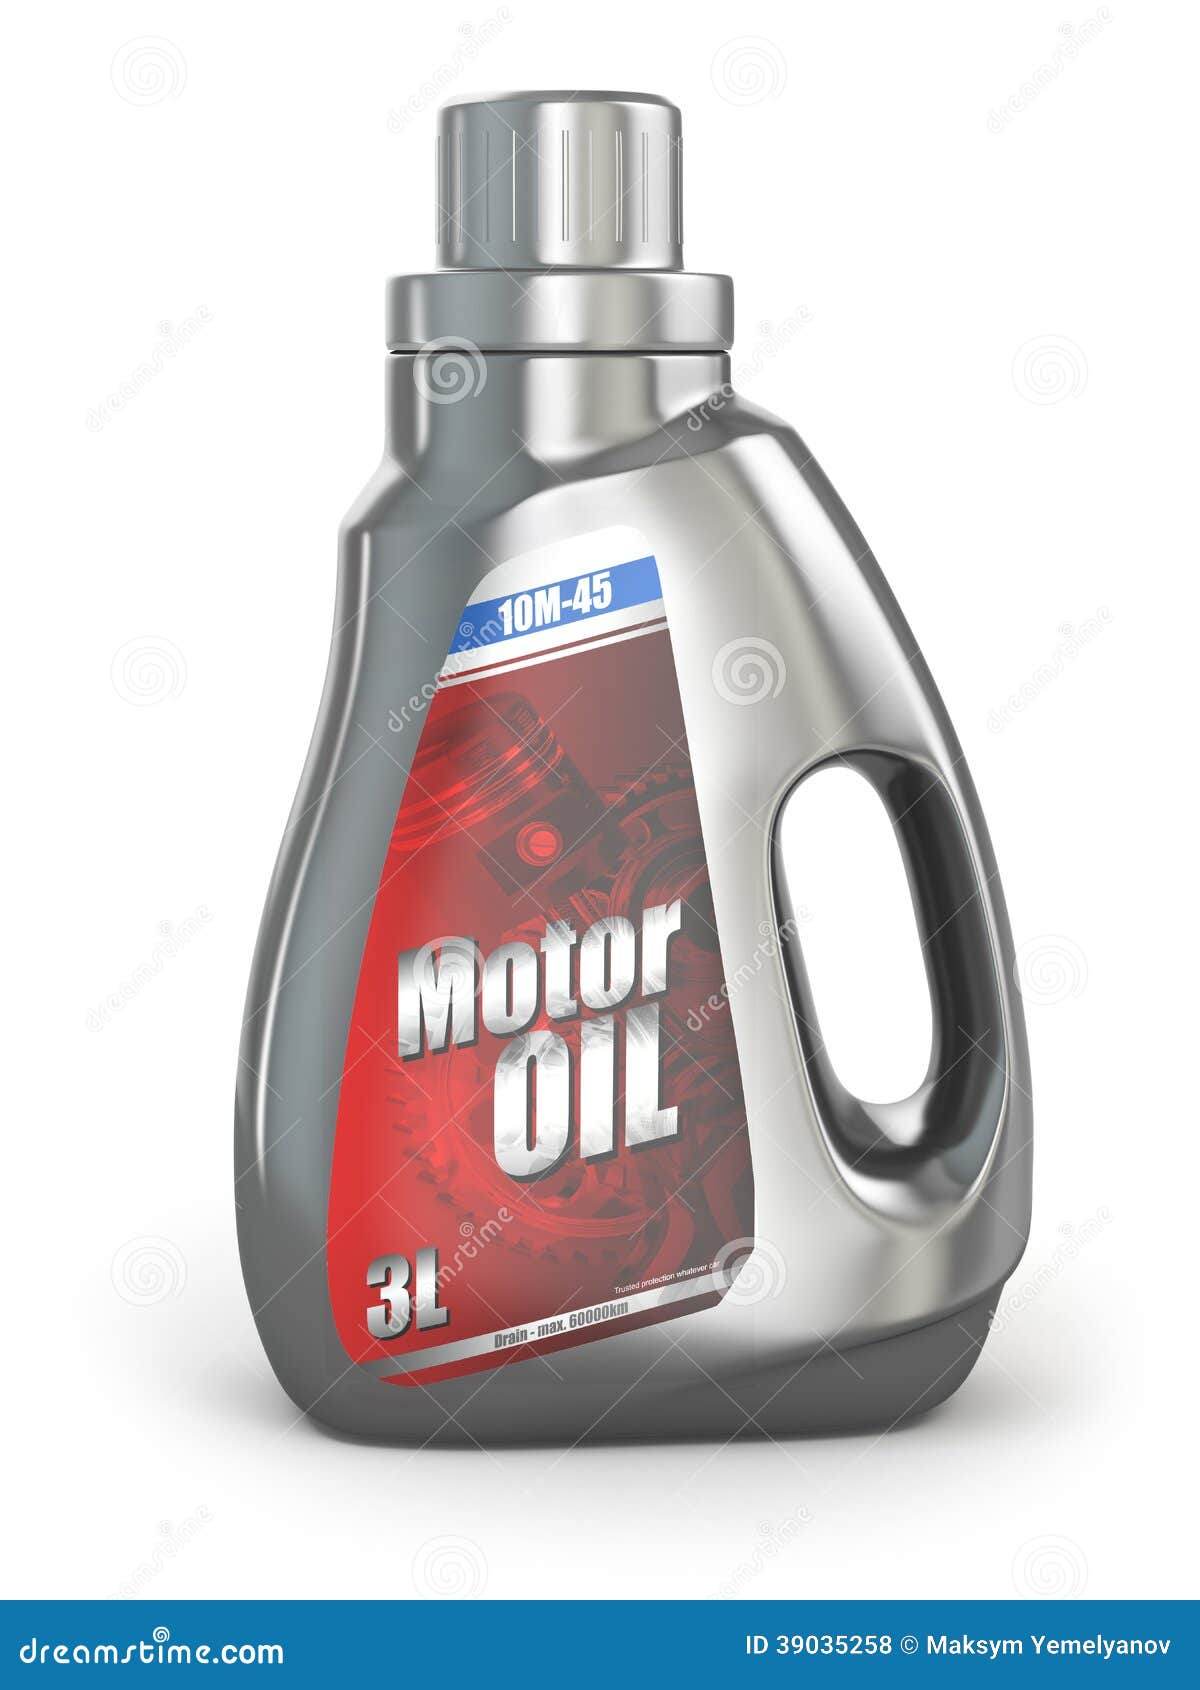 Motor Oil Canister on White Background. Stock Illustration ...